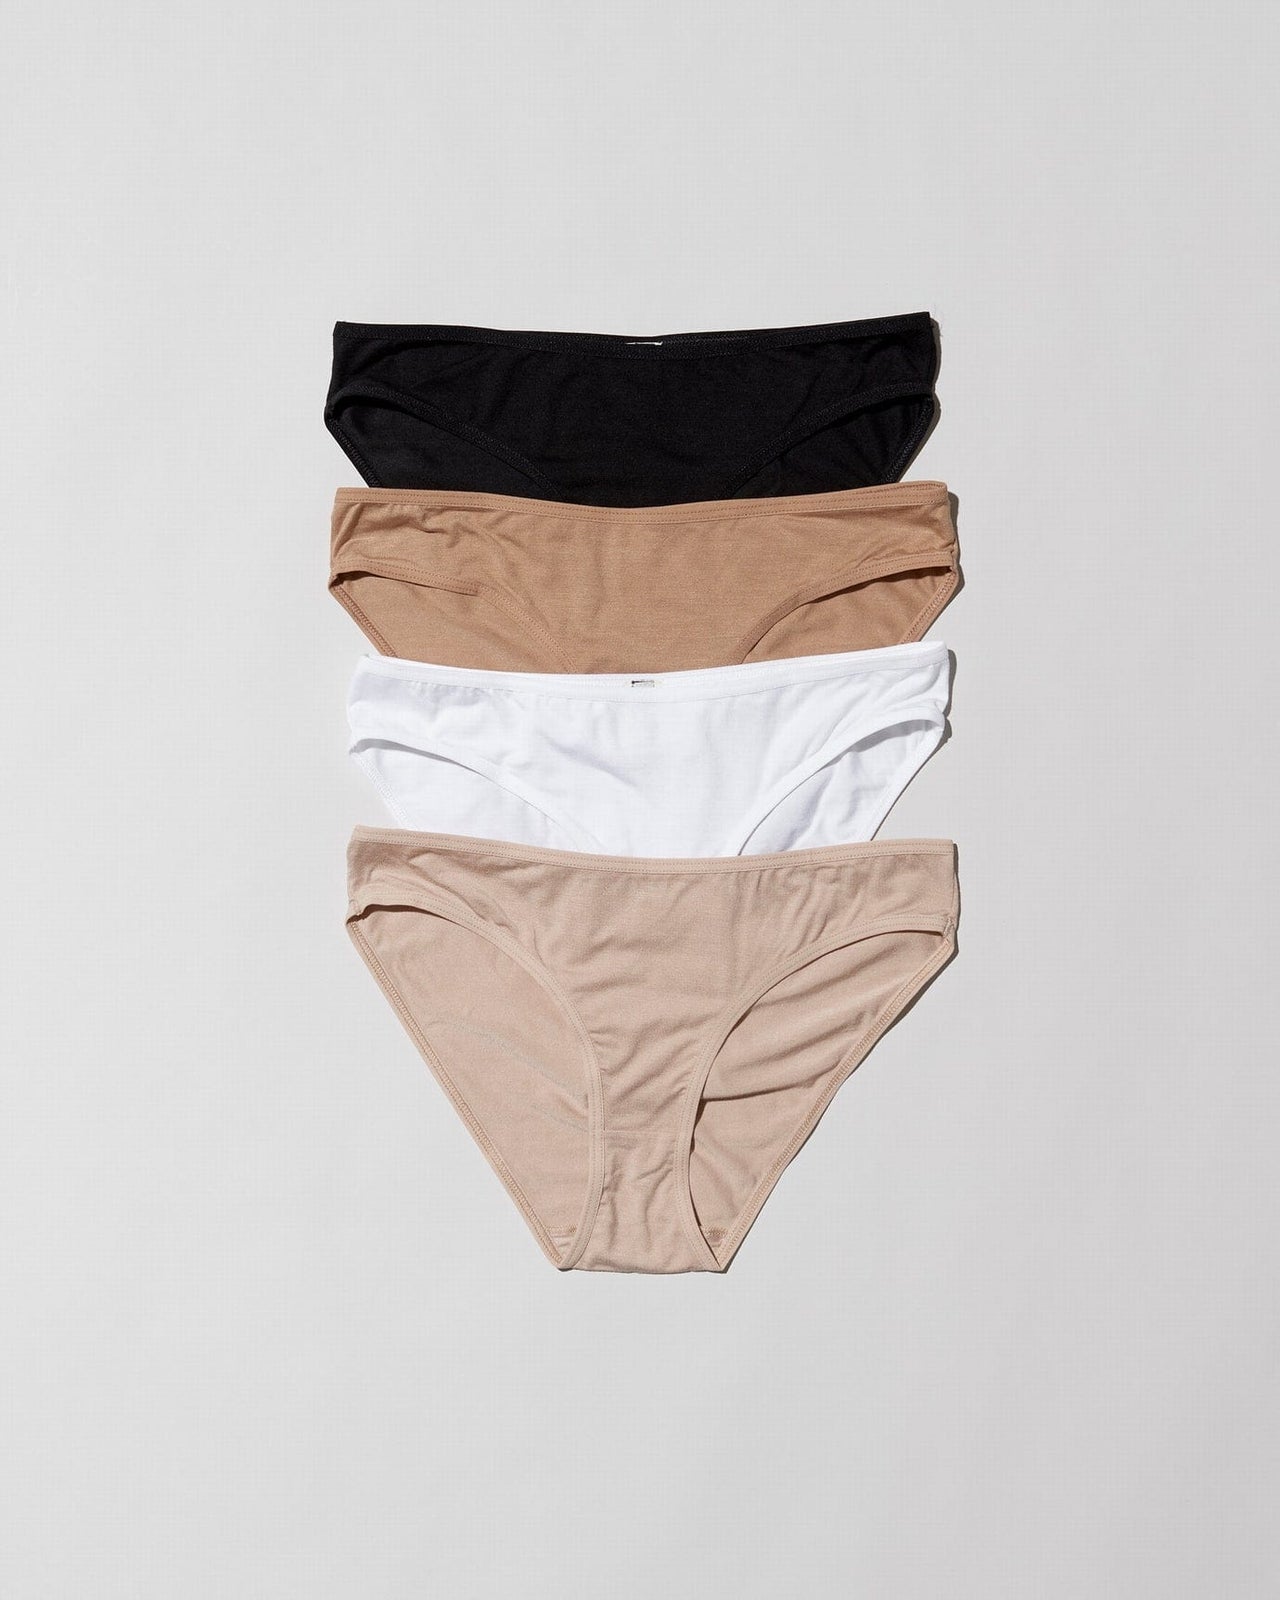   Essentials Women's Bikini Brief Underwear, Pack